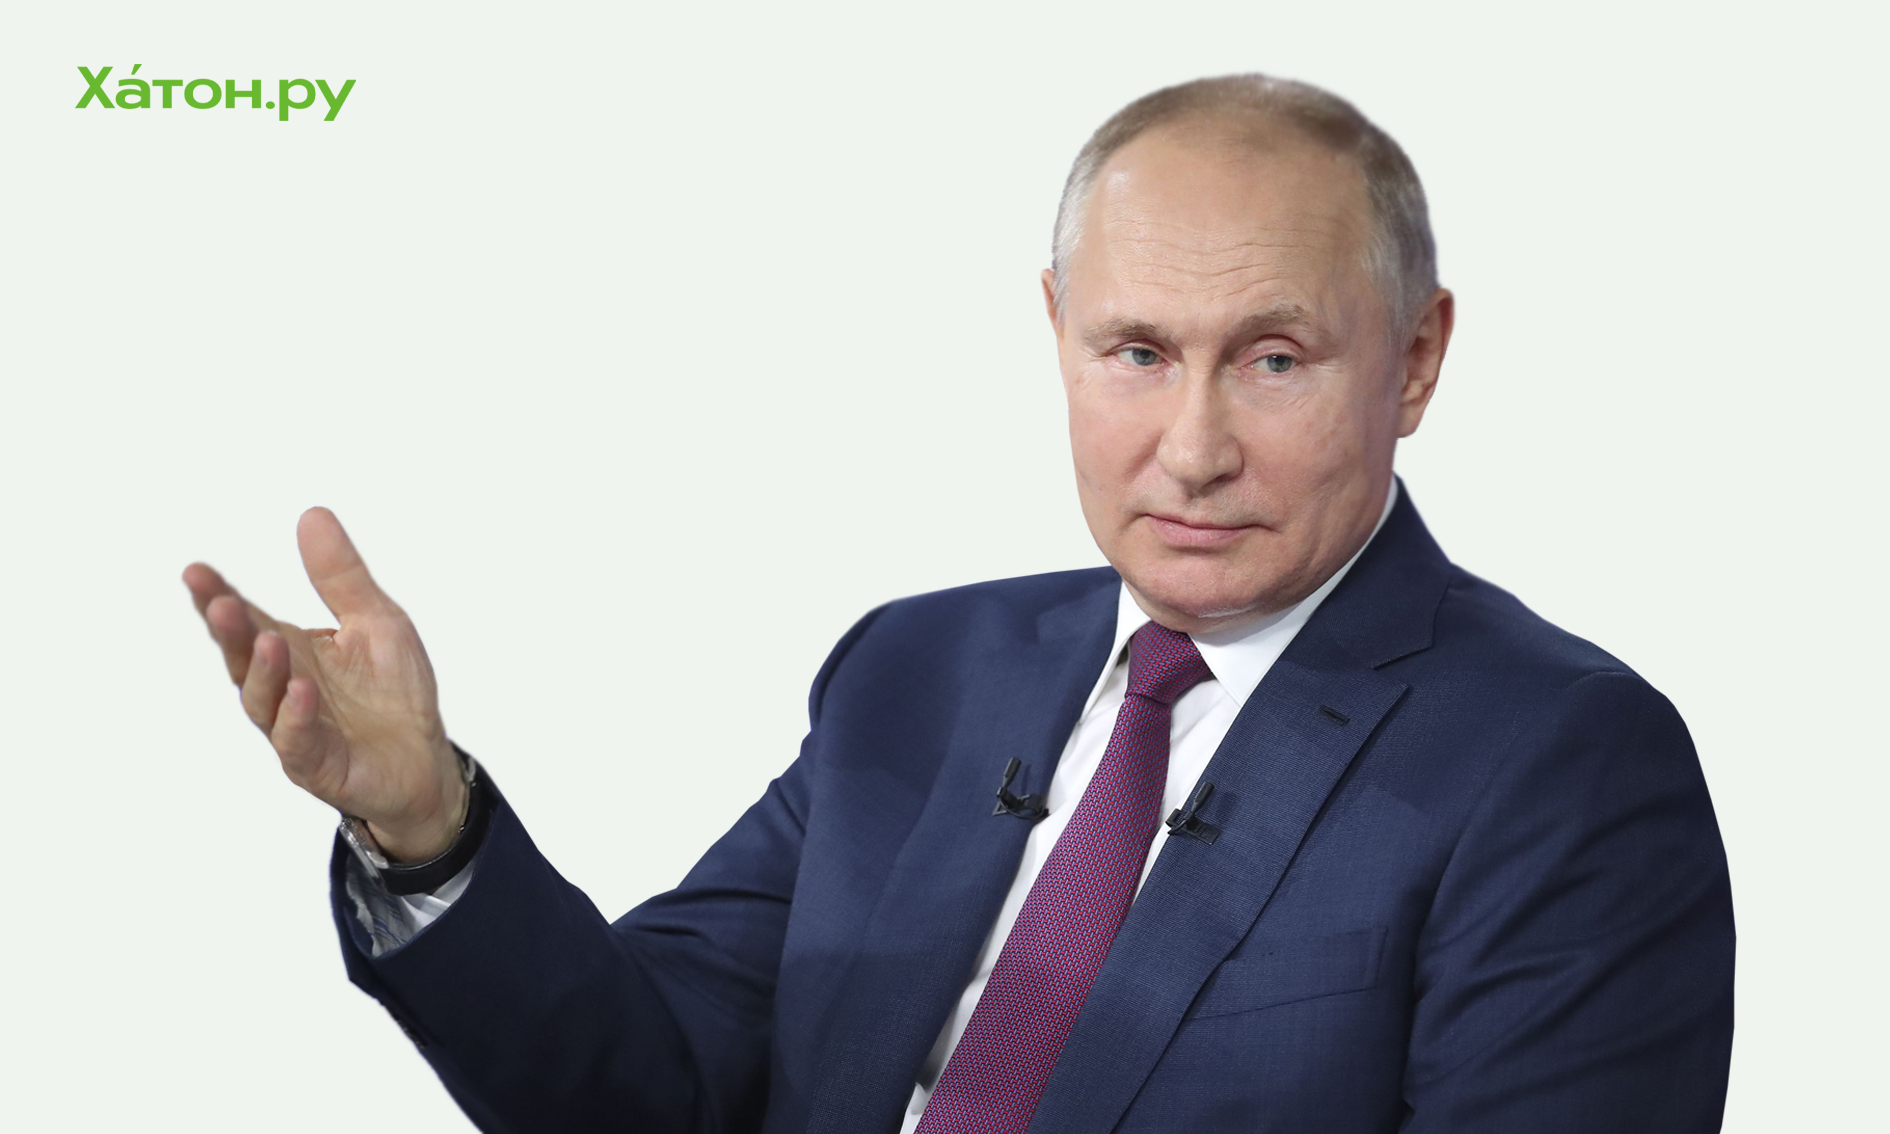 Владимир Путин открыл банкам путь на платформу «Мой экспорт»